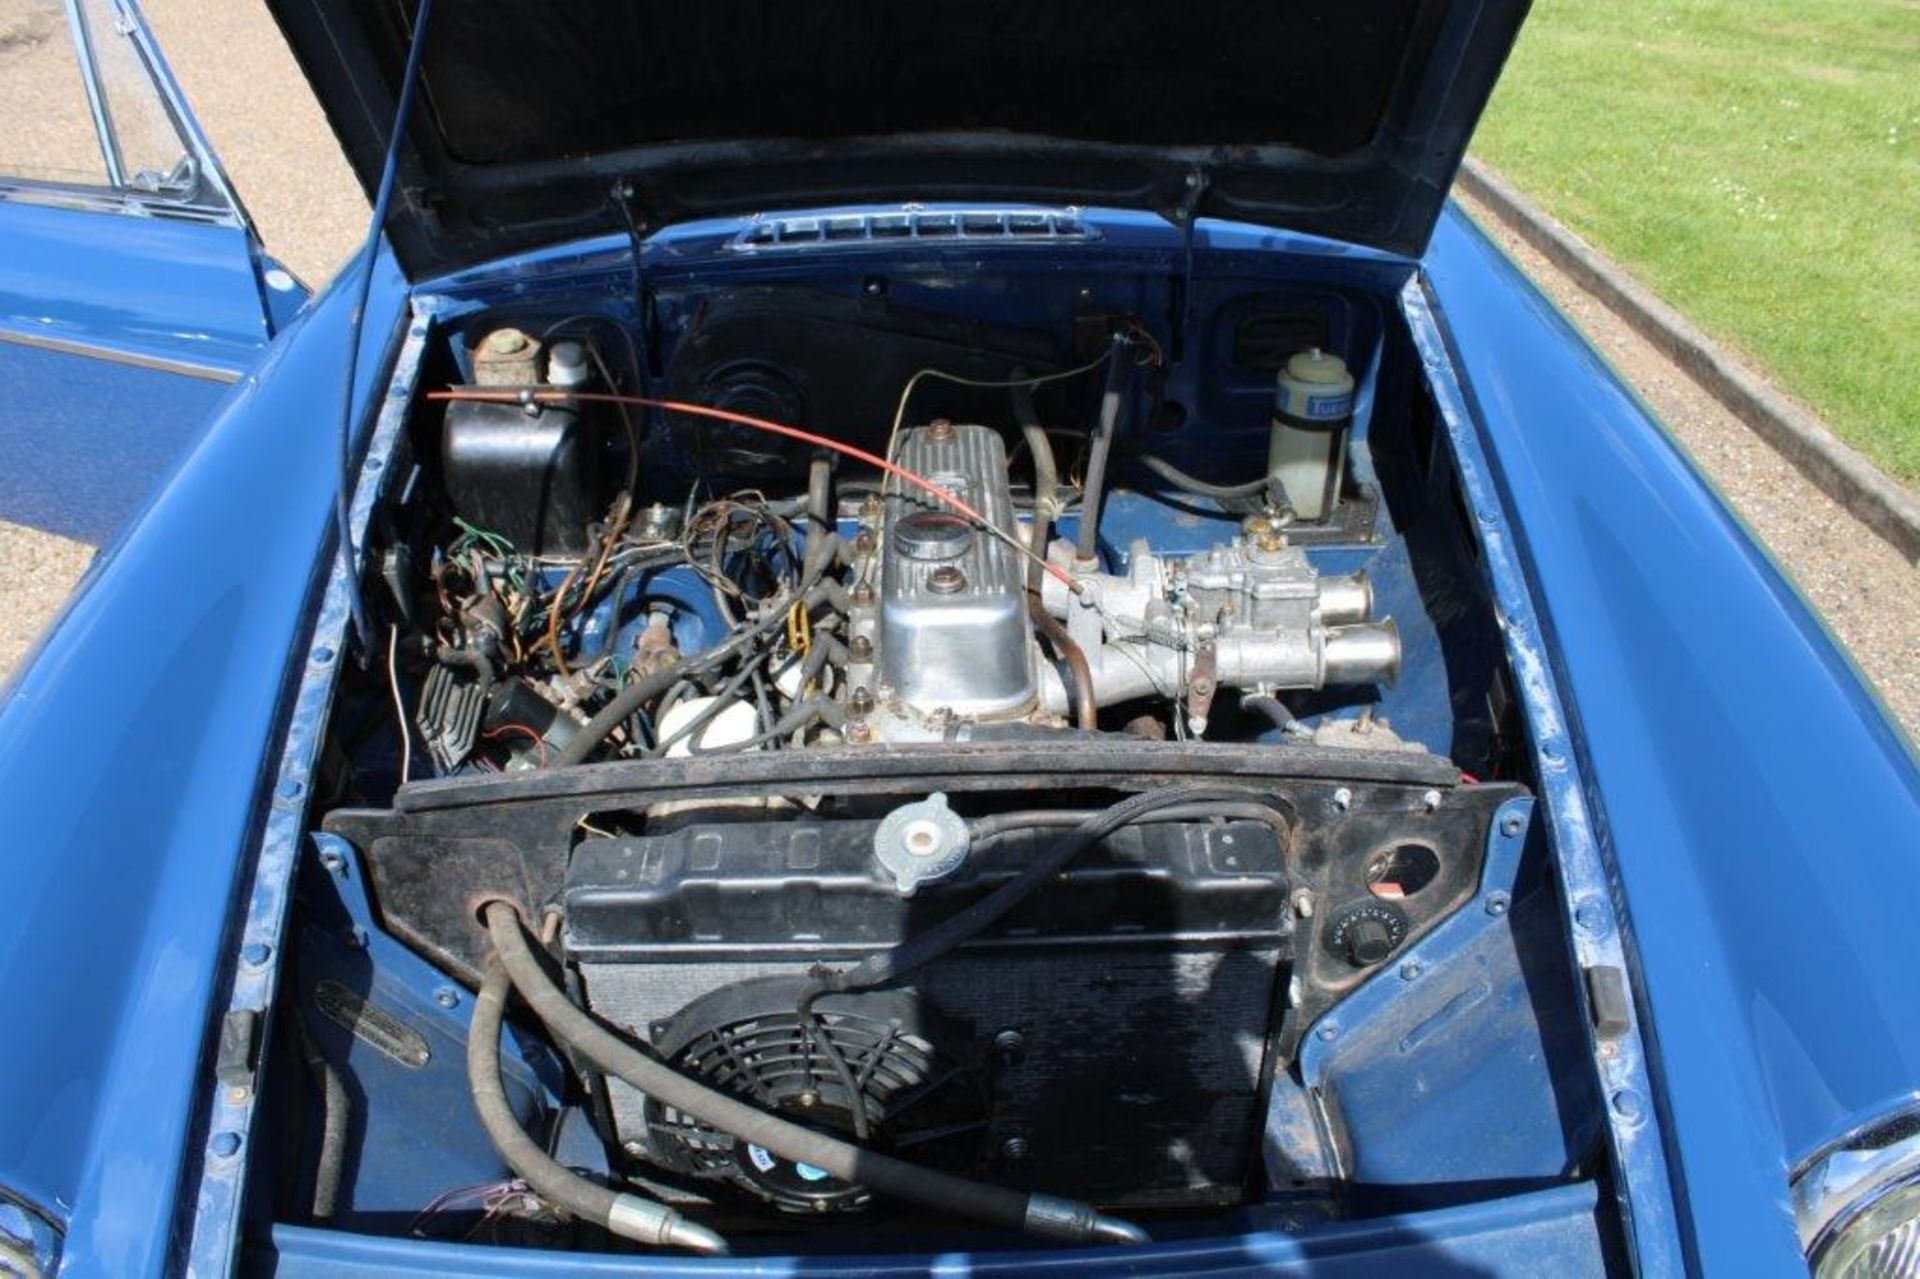 1967 MG BGT - Image 16 of 24